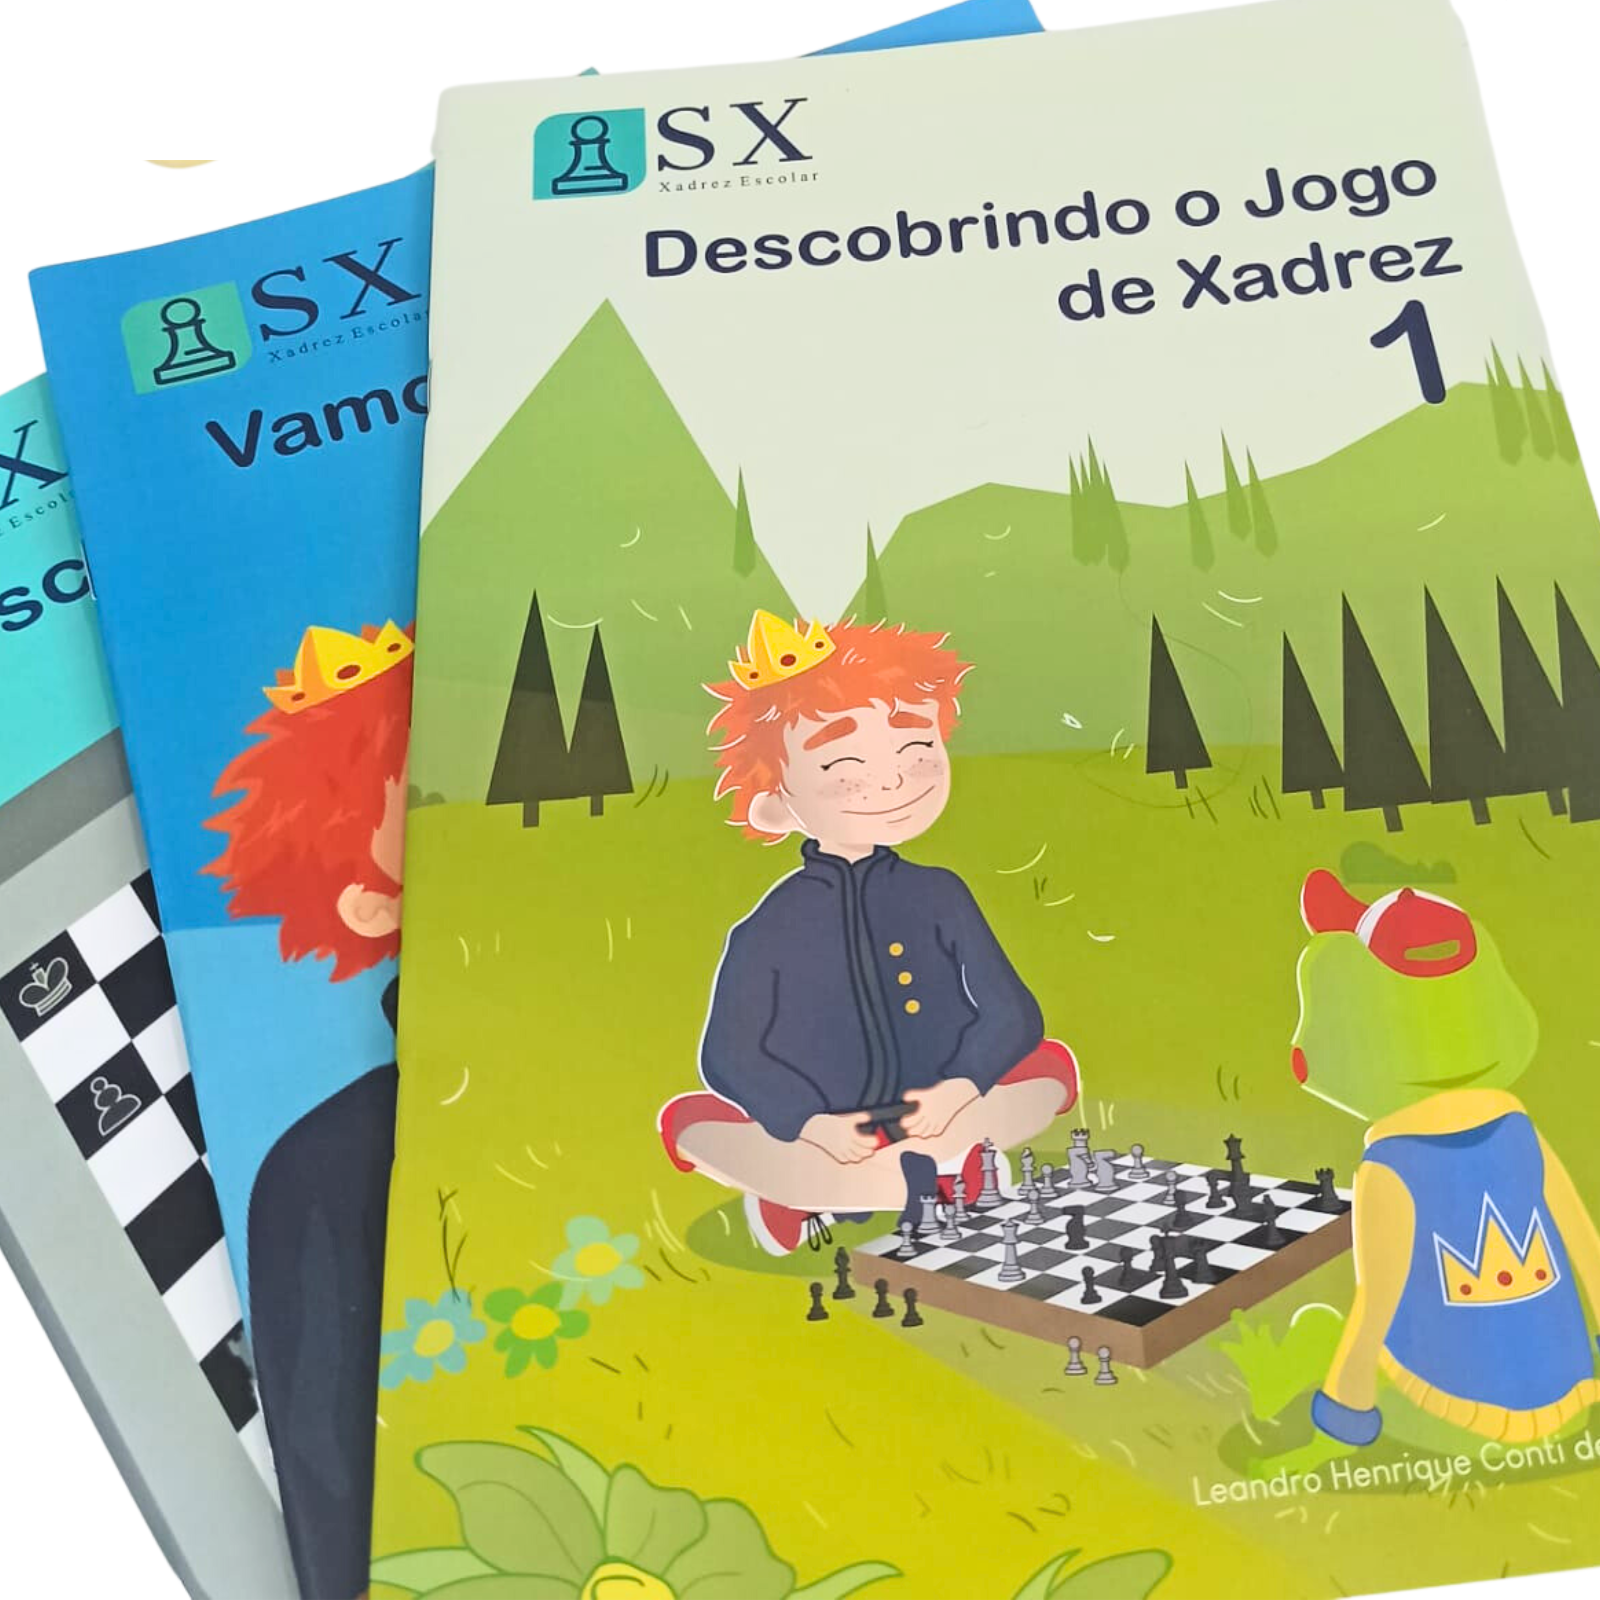 Sistema-X de Xadrez Escolar – O primiero sistema de ensino de xadrez  escolar do Brasil. O Sistema-X é um conjunto de soluções voltadas para a  implantação do jogo de xadrez como ferramenta